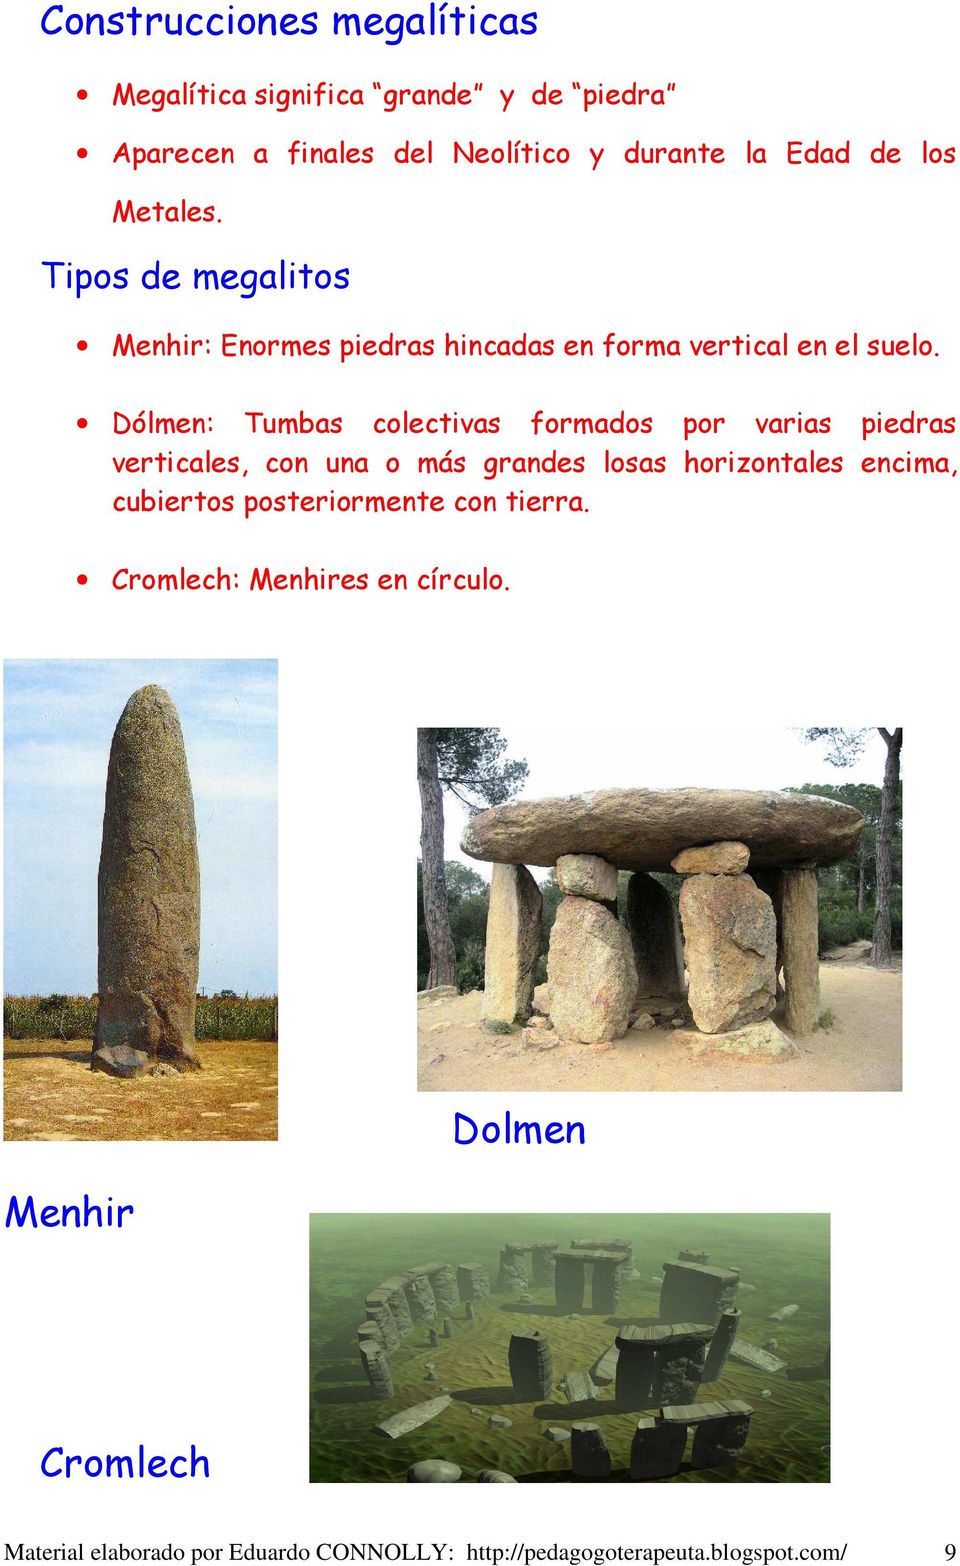 Dólmen: Tumbas colectivas formados por varias piedras verticales, con una o más grandes losas horizontales encima, cubiertos